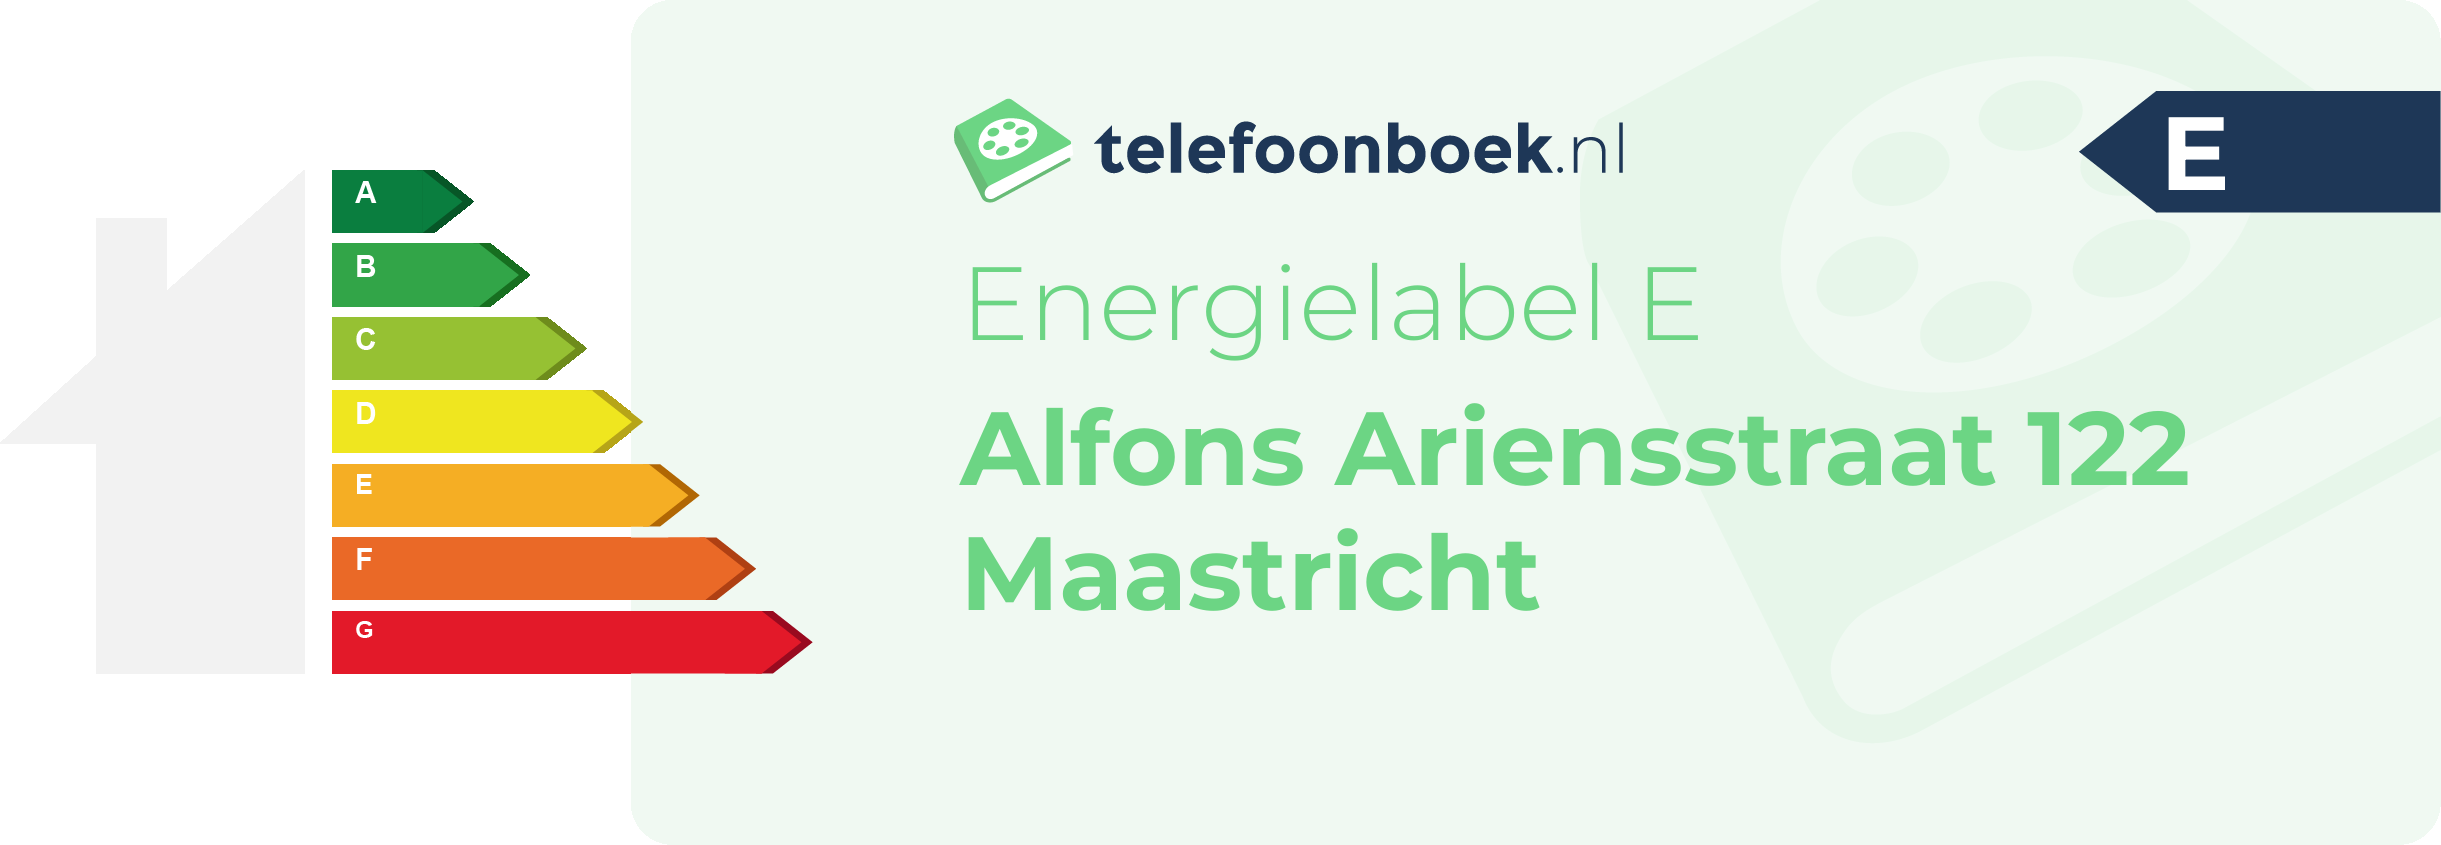 Energielabel Alfons Ariensstraat 122 Maastricht